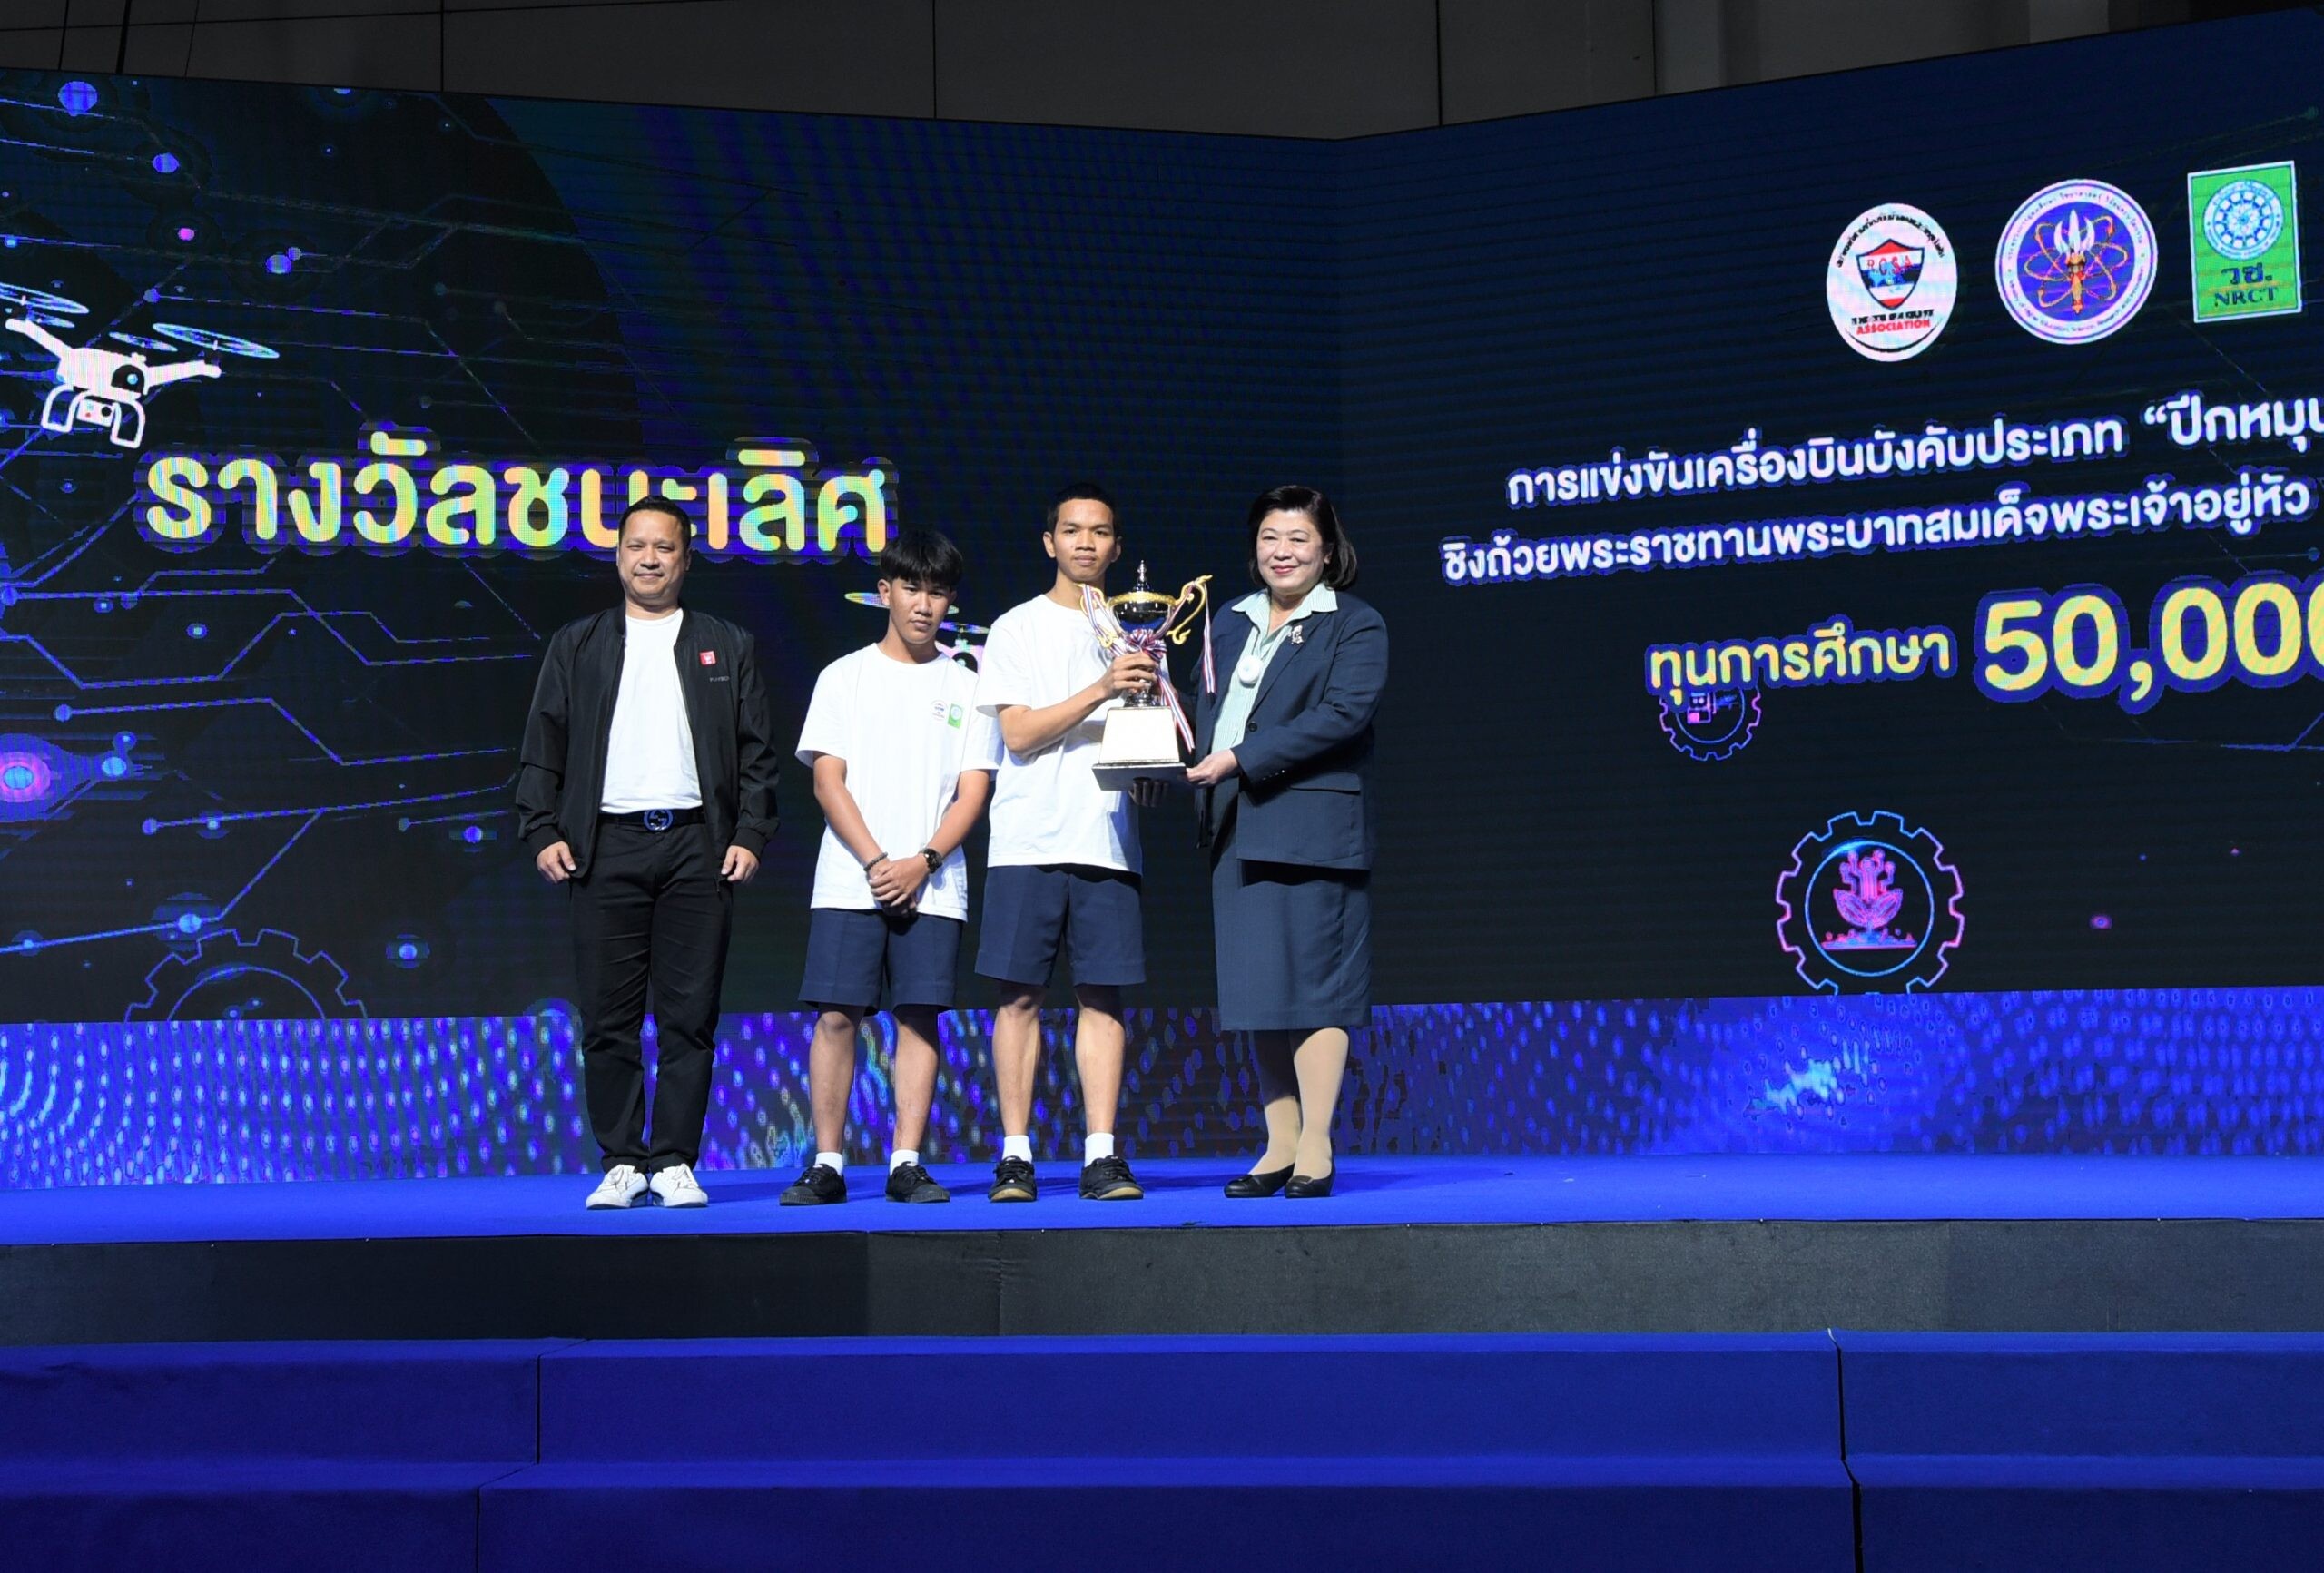 วช. ร่วมกับ สมาคมกีฬาเครื่องบินจำลองและวิทยุบังคับ หนุนเยาวชนให้เป็นนวัตกร สร้างนวัตกรรมในประเทศ จัดแข่งขันและมอบรางวัลหนูน้อยจ้าวเวหา Young Pilot Thai PBS ในงานวันนักประดิษฐ์ 2566